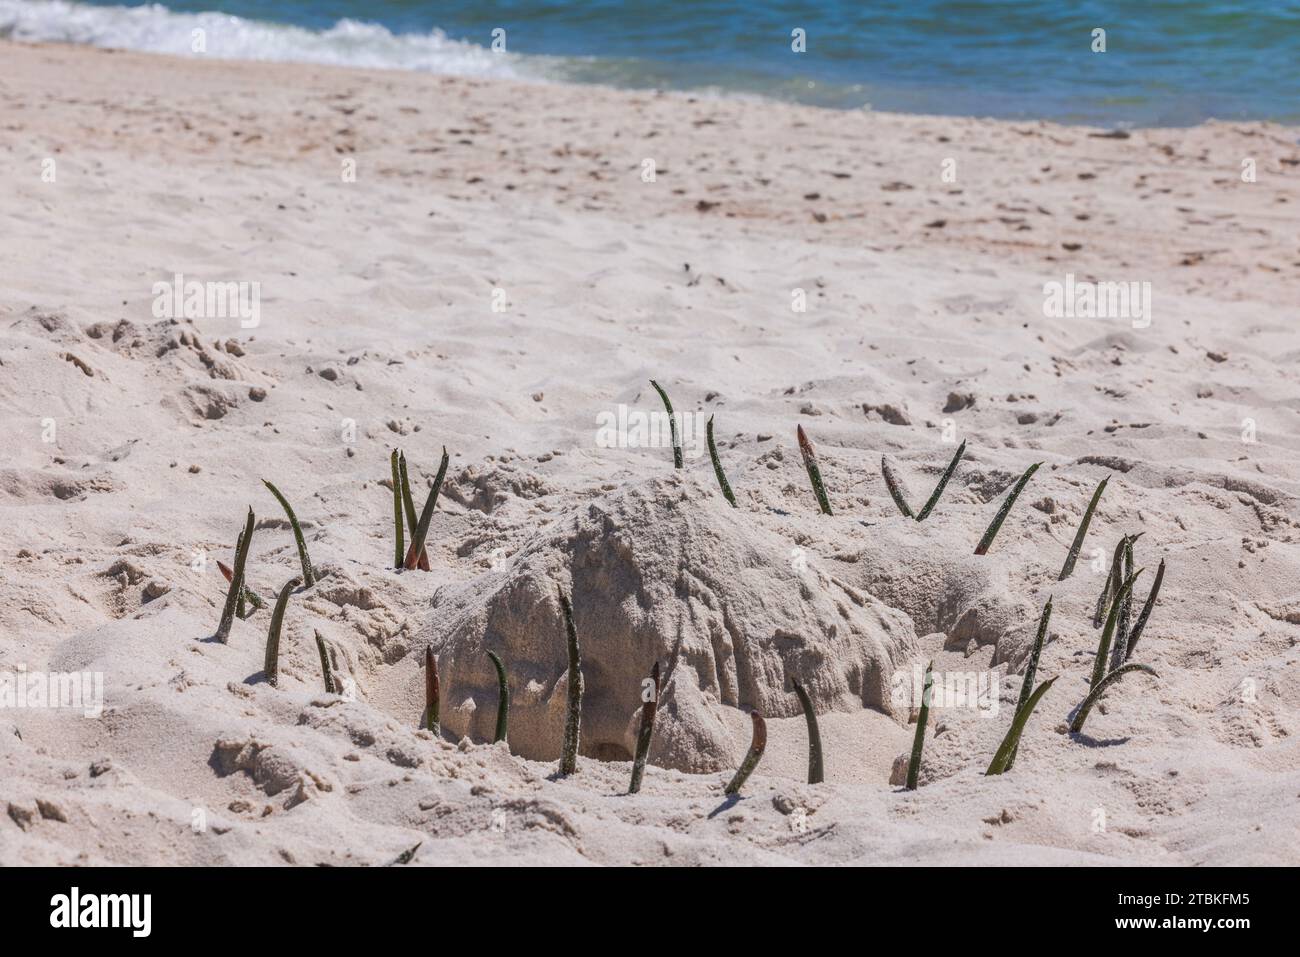 Wunderschöner Blick auf die bezaubernde Anordnung von Sand und Meerespflanzen am Strand an der Küste. Sonnenurlaub und Tourismuskonzept. Miami Beach. USA. Stockfoto